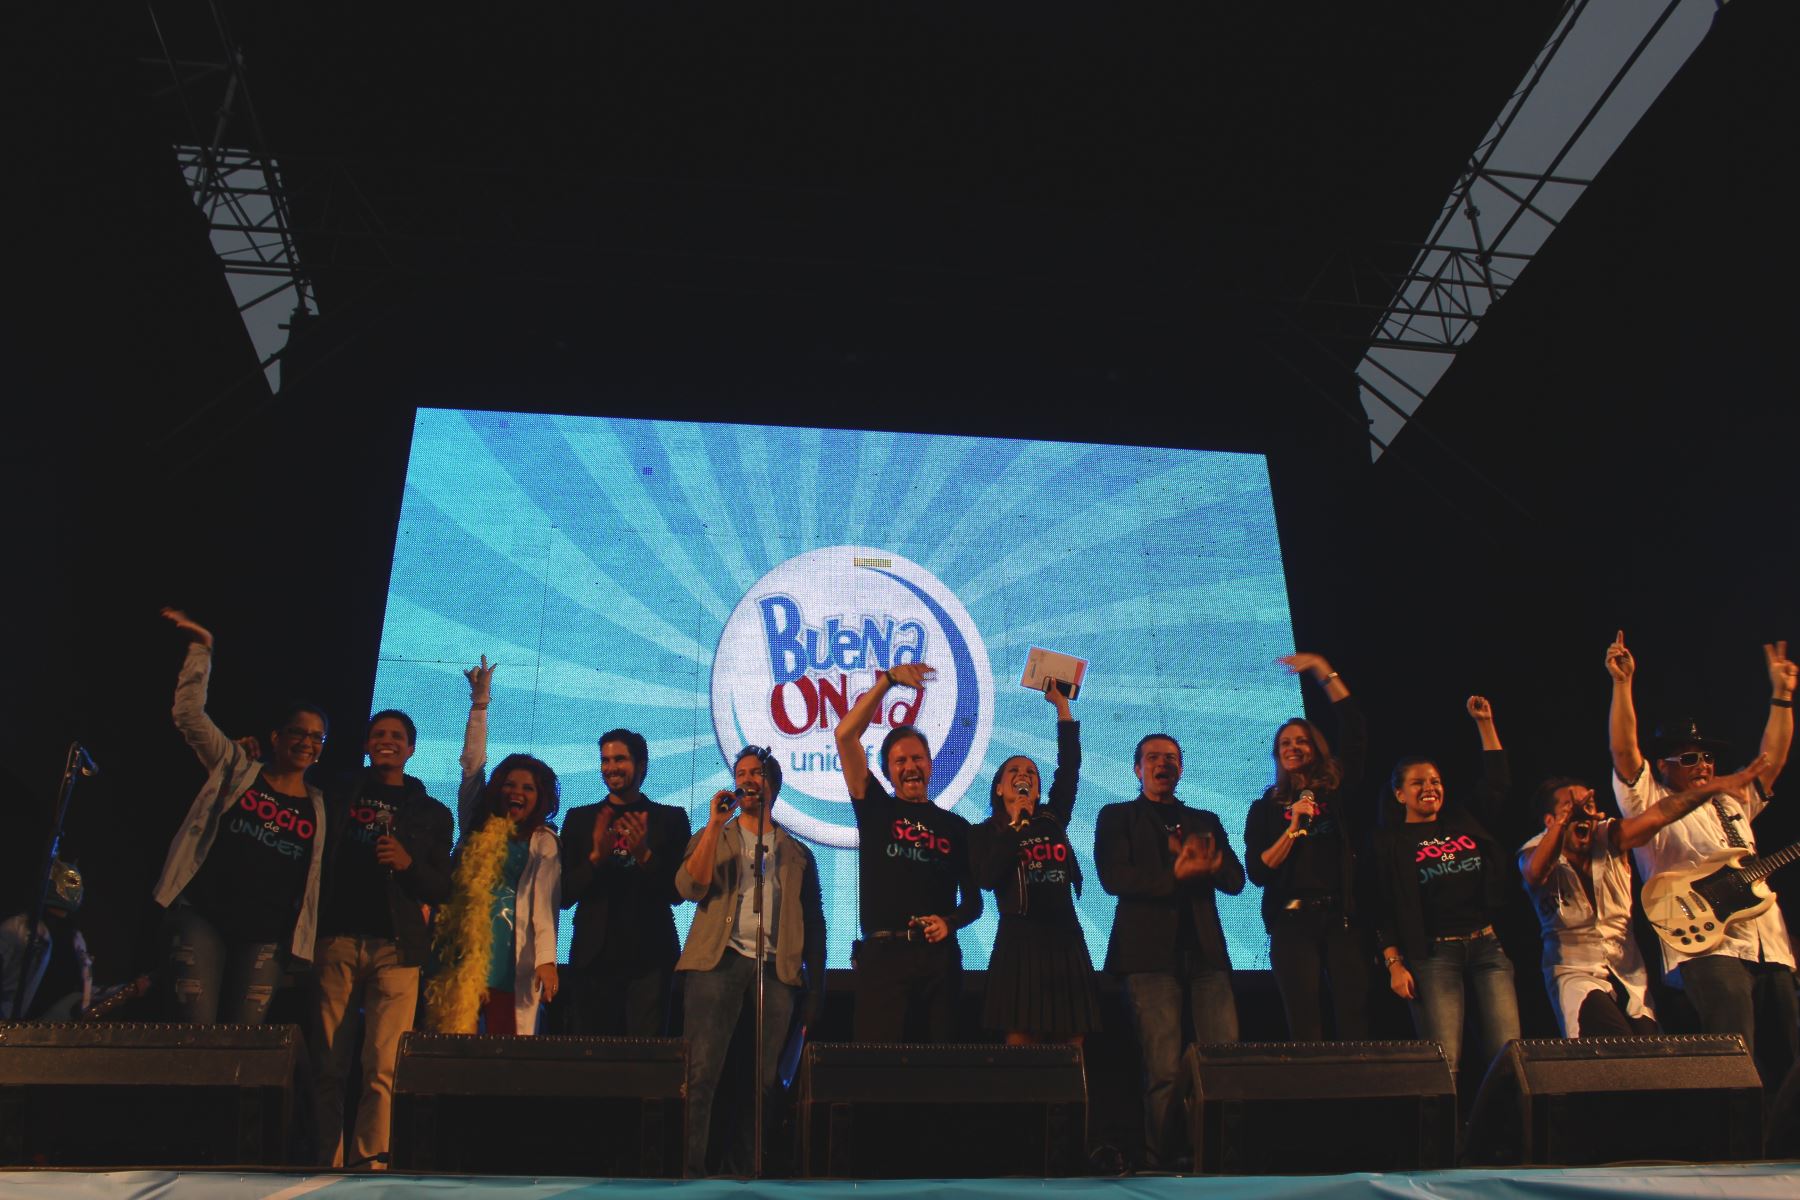 Clausura de campaña Buena Onda 2014 de Unicef.